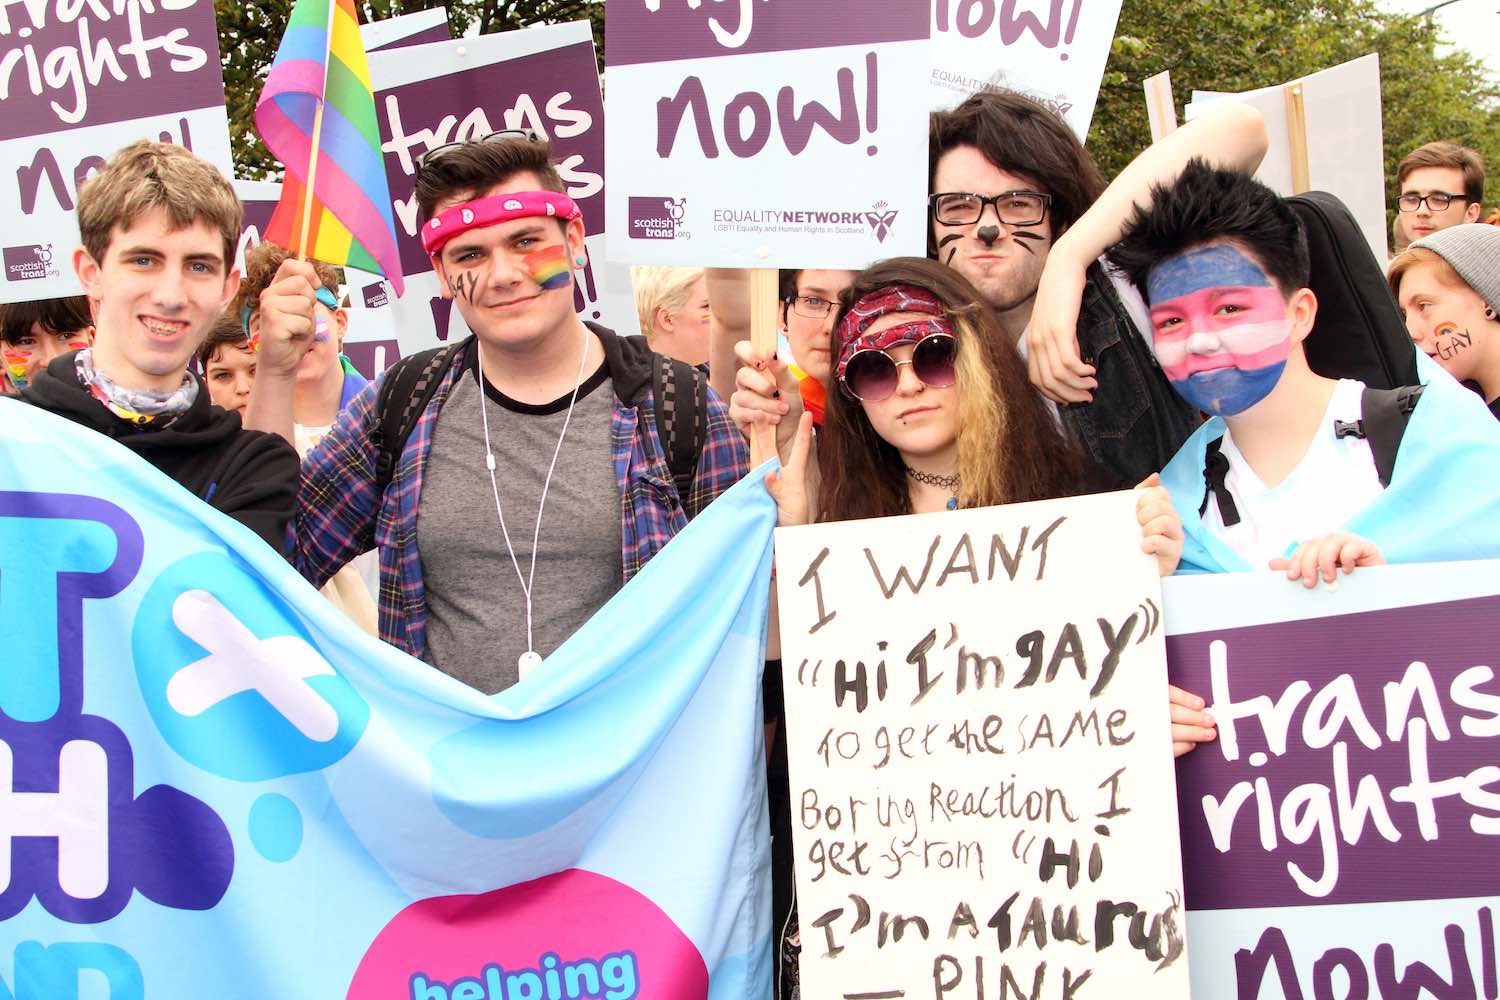 Glasgow Gay Rights